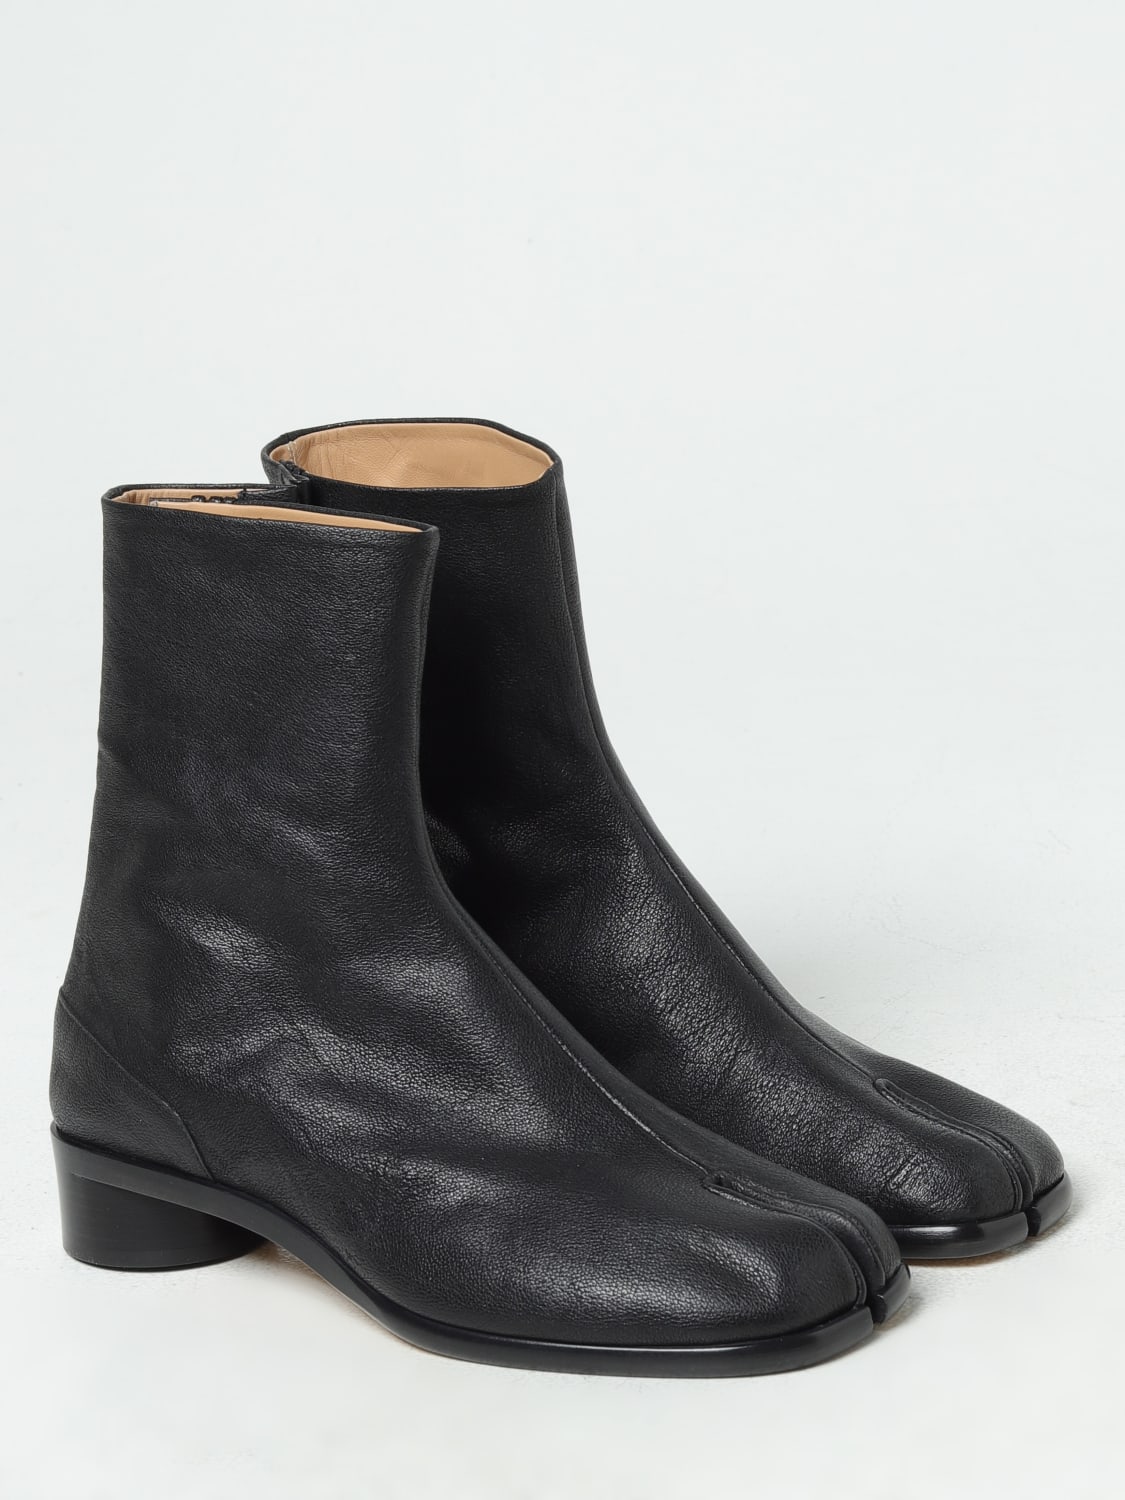 MAISON MARGIELA: Boots men - Black | Maison Margiela boots S57WU0153PR058  online at GIGLIO.COM